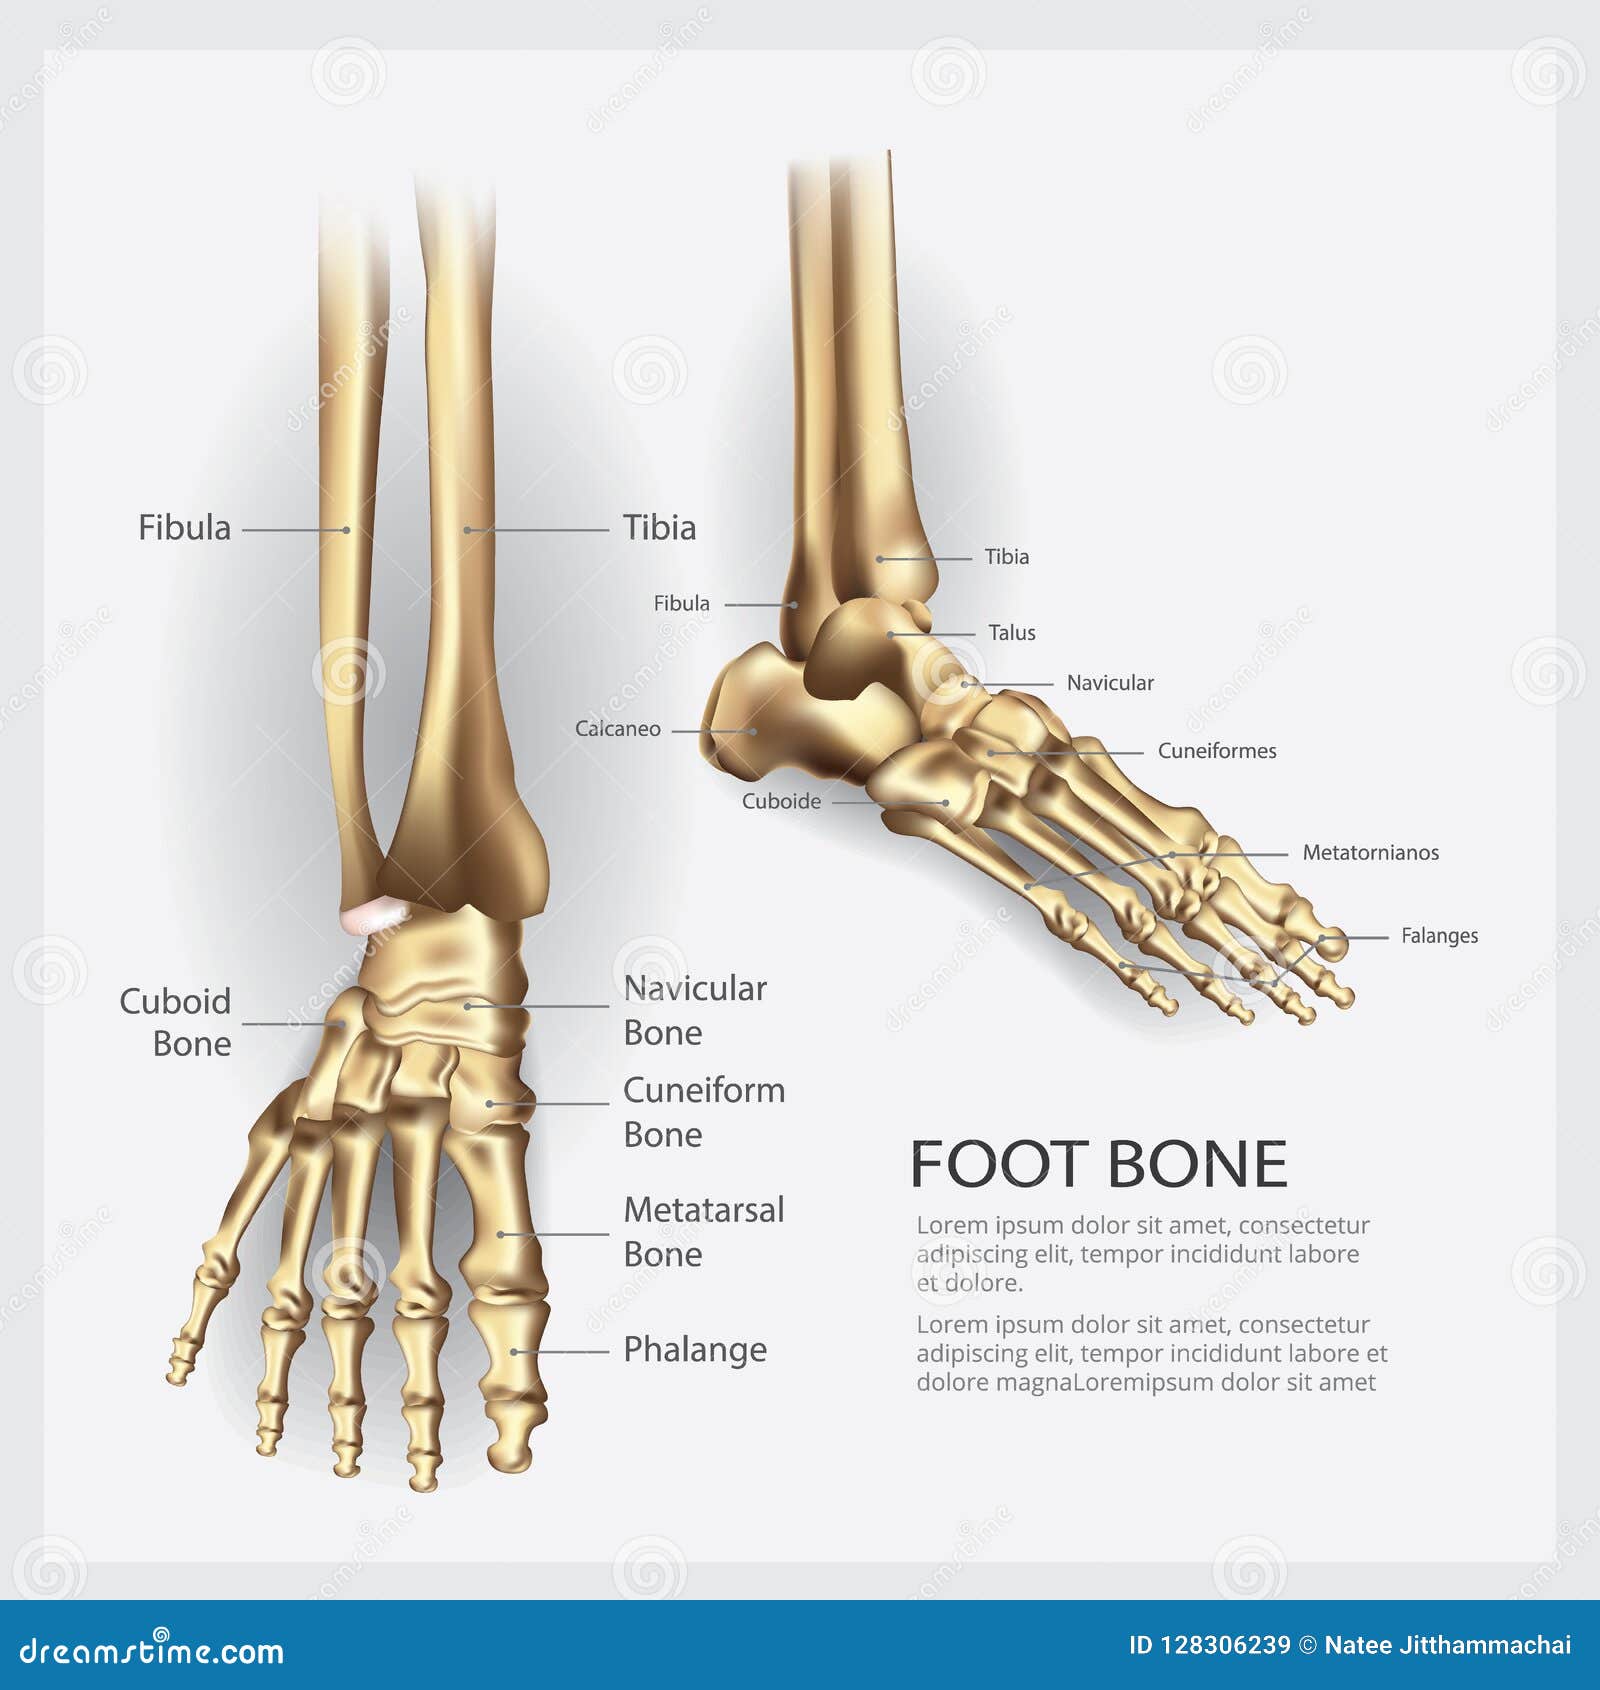 完整足部骨骼结构图_脚各个部位名称图_微信公众号文章